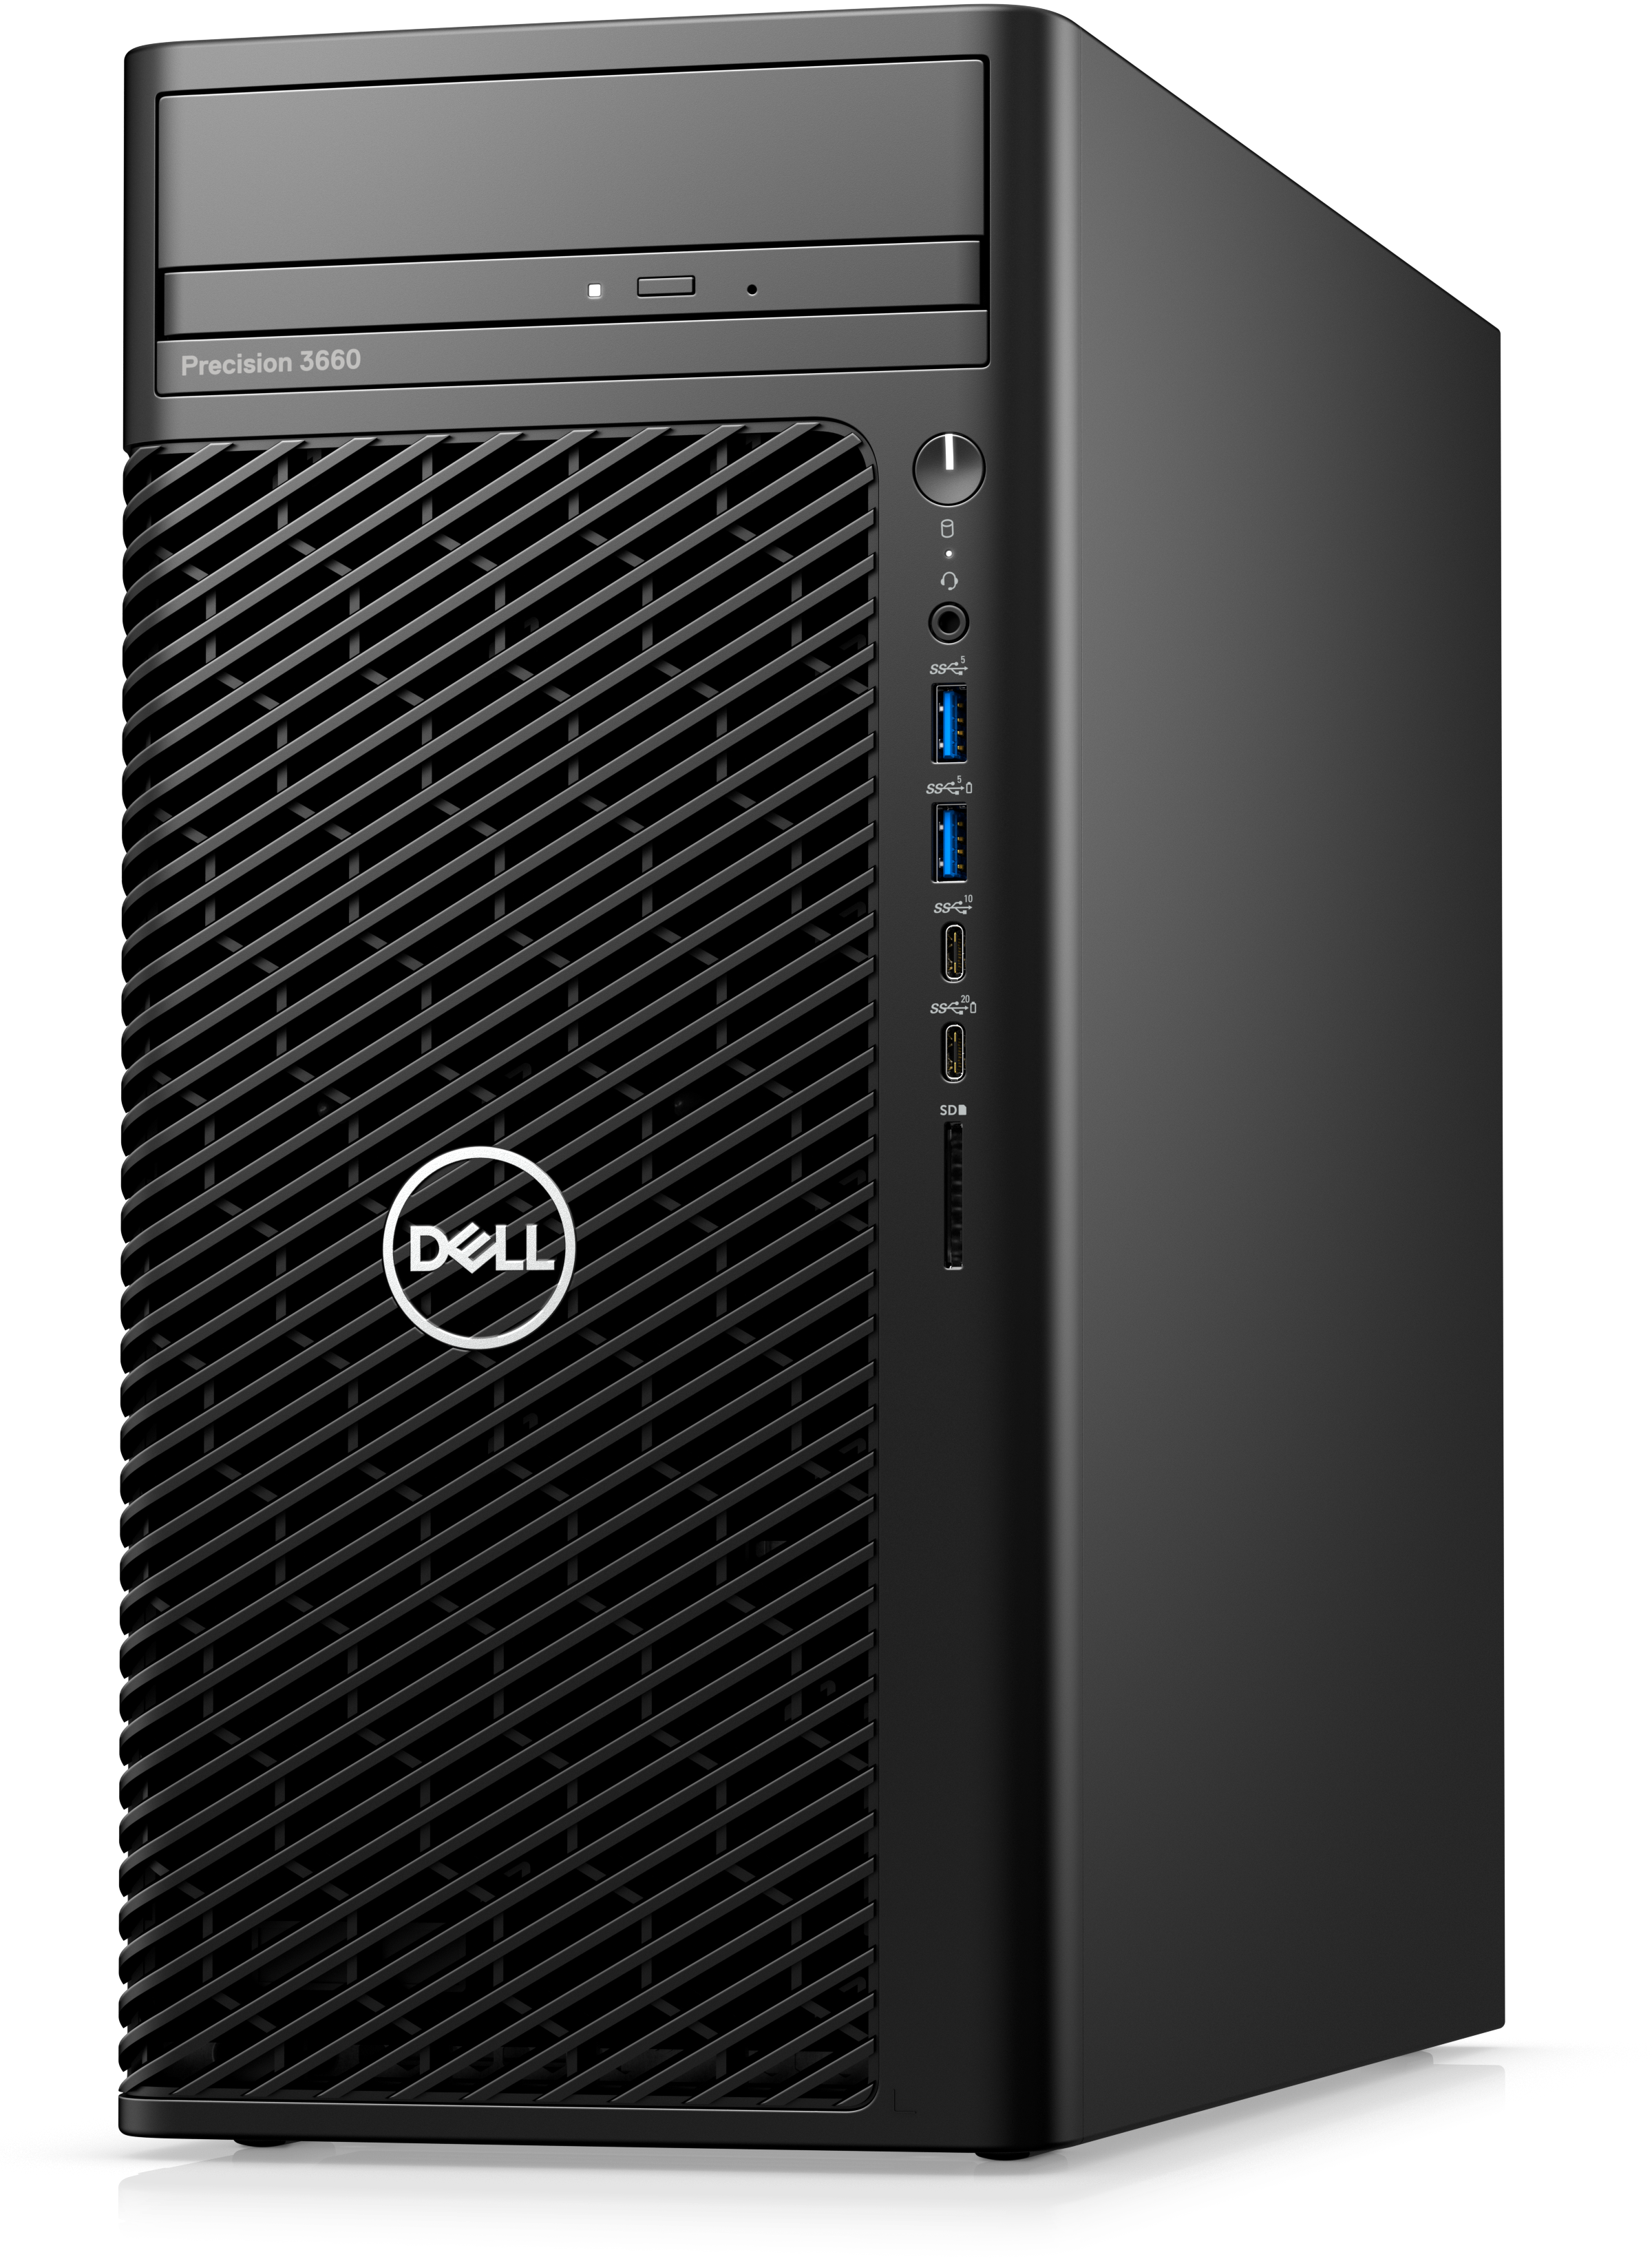 Dell Precision T3660, Intel Core i9-12900 (16 core 30MB cache) 16GB RAM,512 SSD, No Monitor, DVDRW, 3 Yrs PS, 500W, 8.5kg, Windows 10 Pro